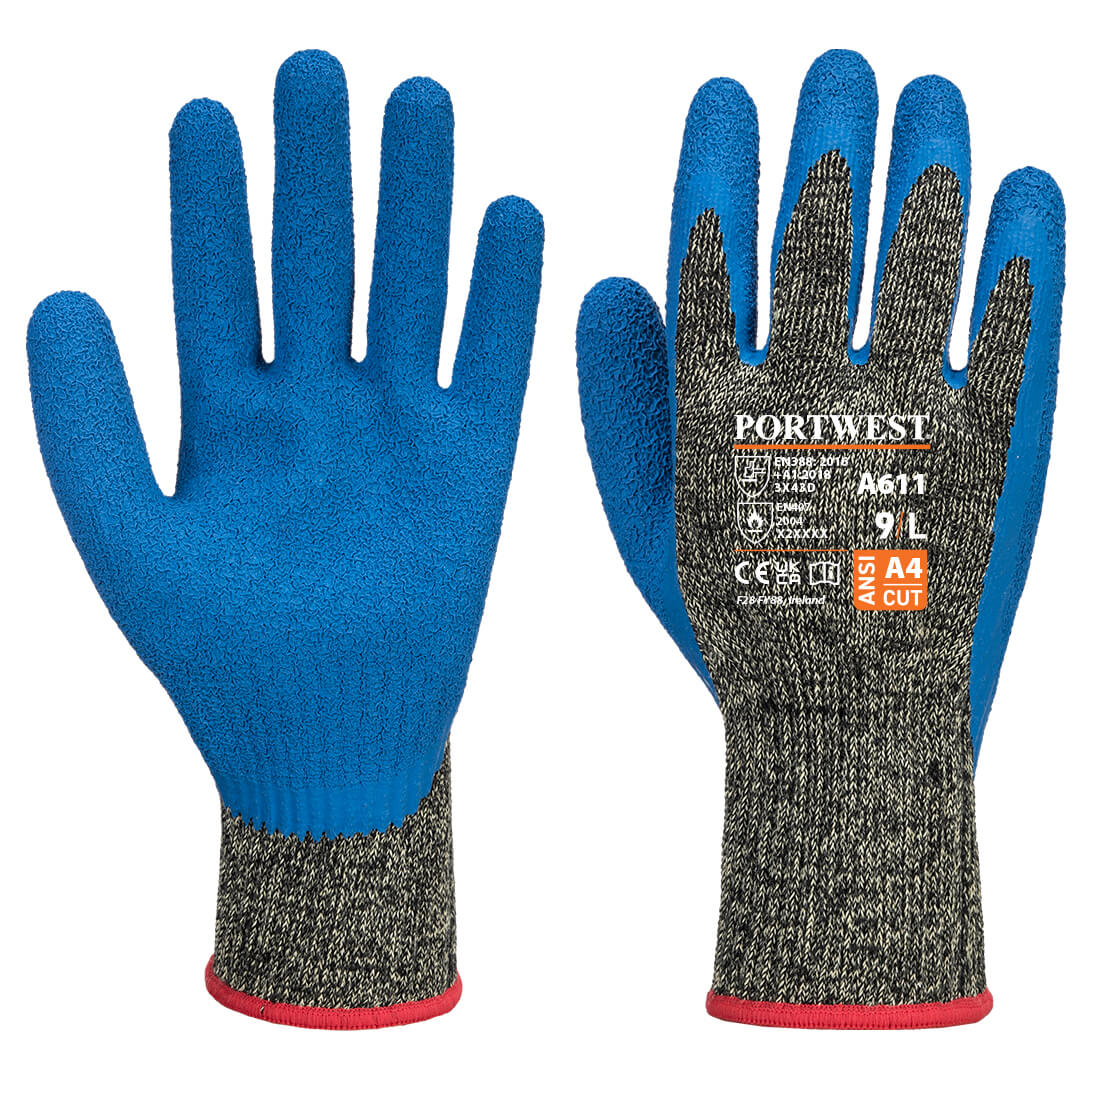 Aramid HR Cut Latex Glove - Black/Blue